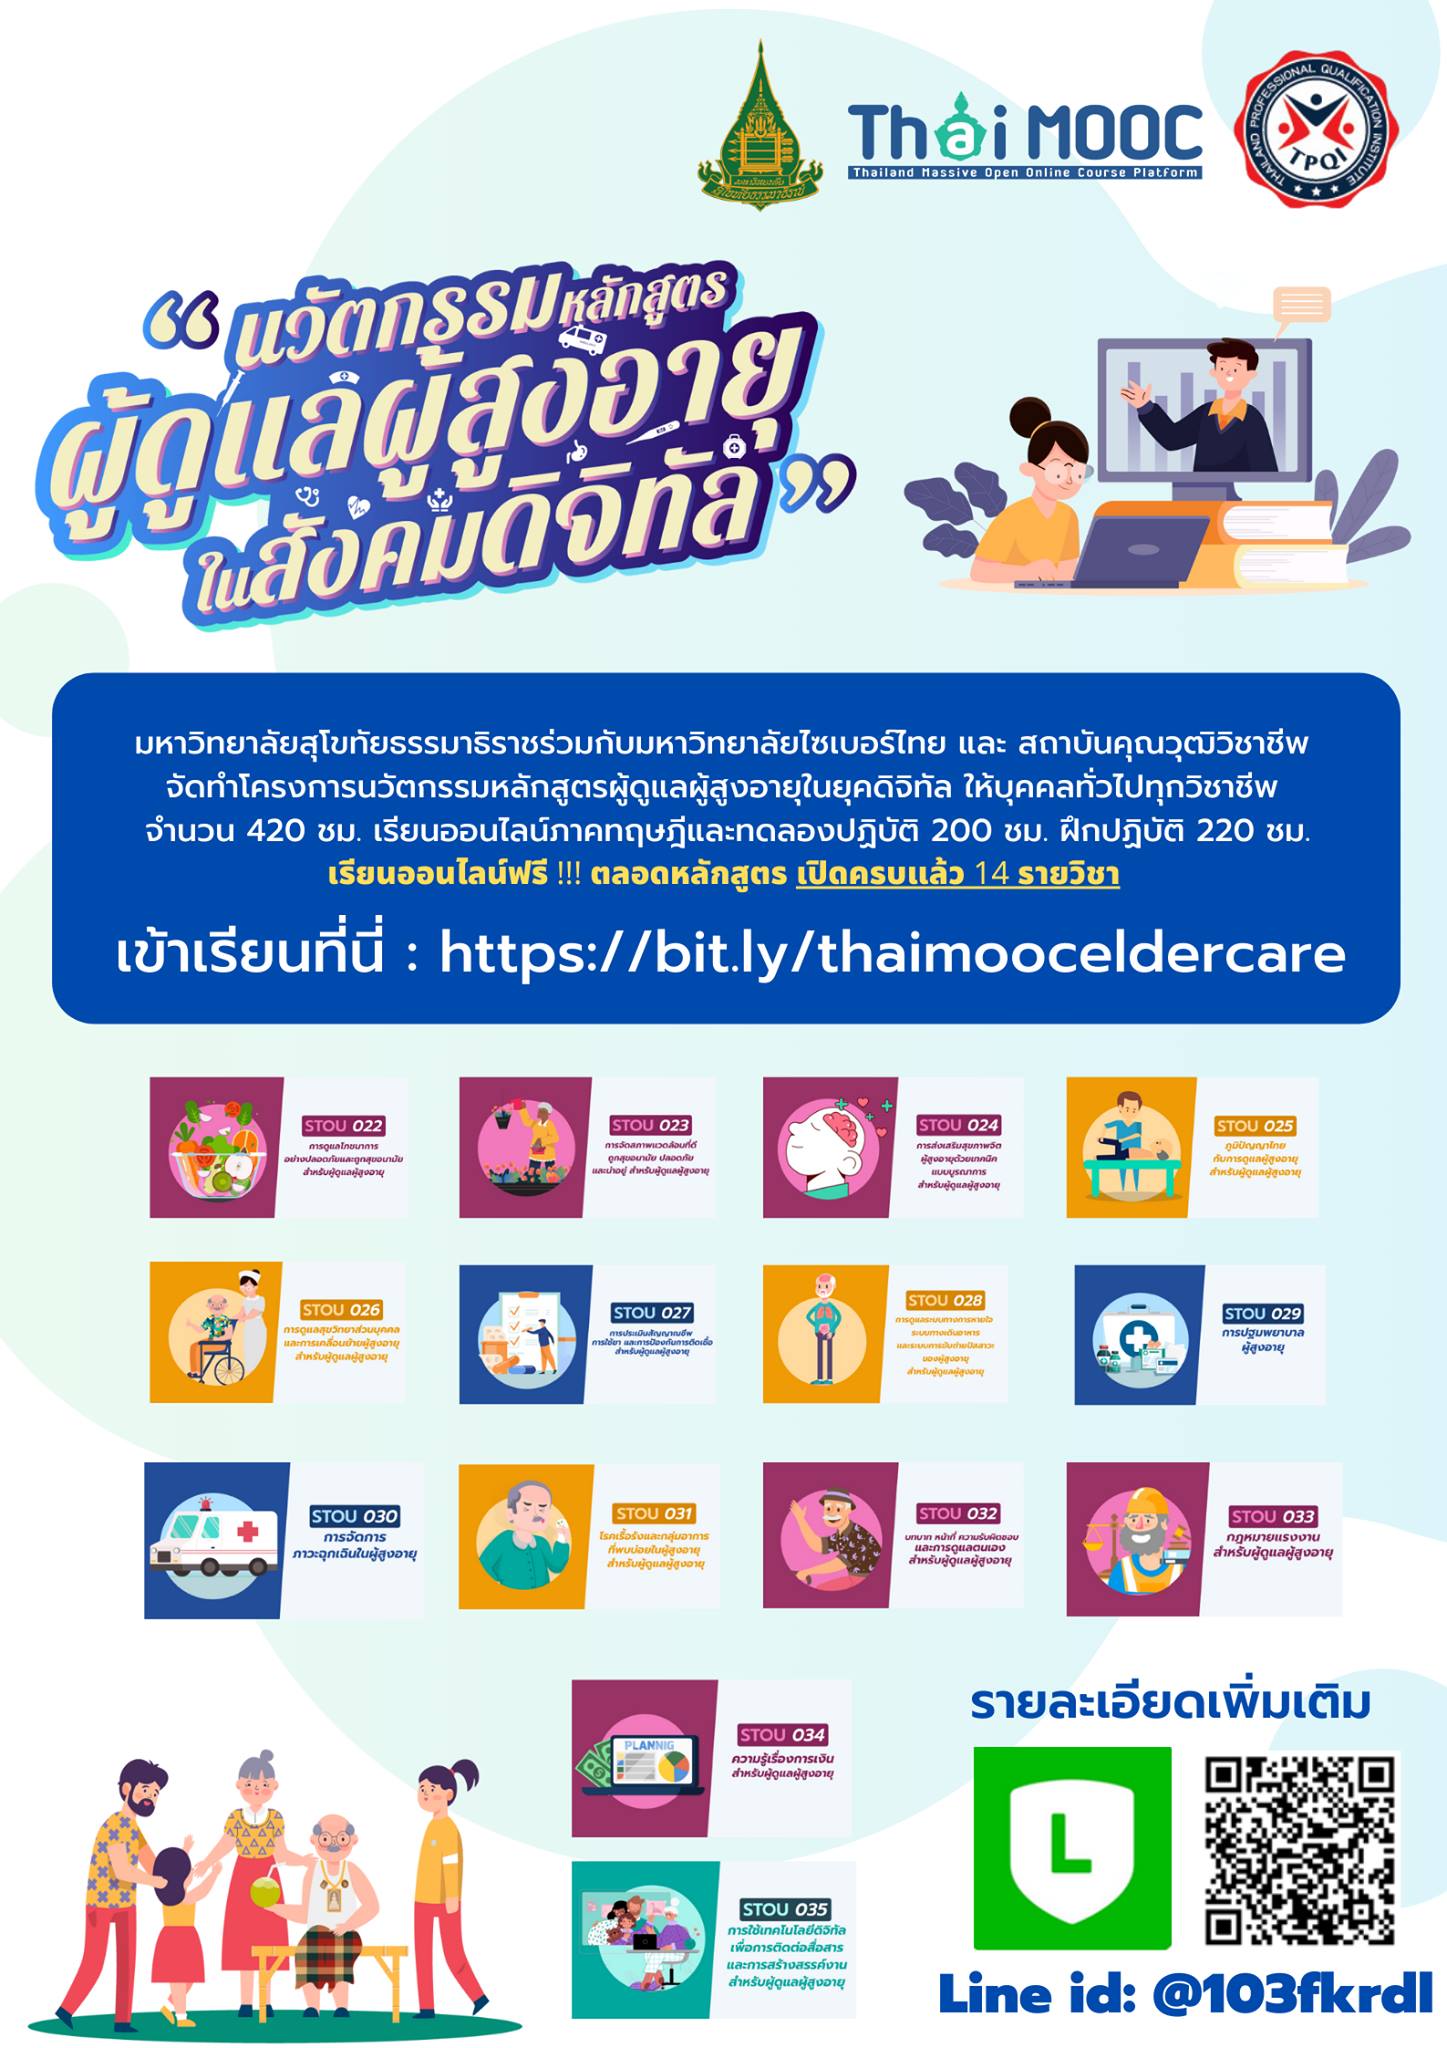 เรียนออนไลน์ฟรี 14 วิชา การดูแลผู้สูงอายุในสังคมดิจิตอล ผ่าน ThaiMooc